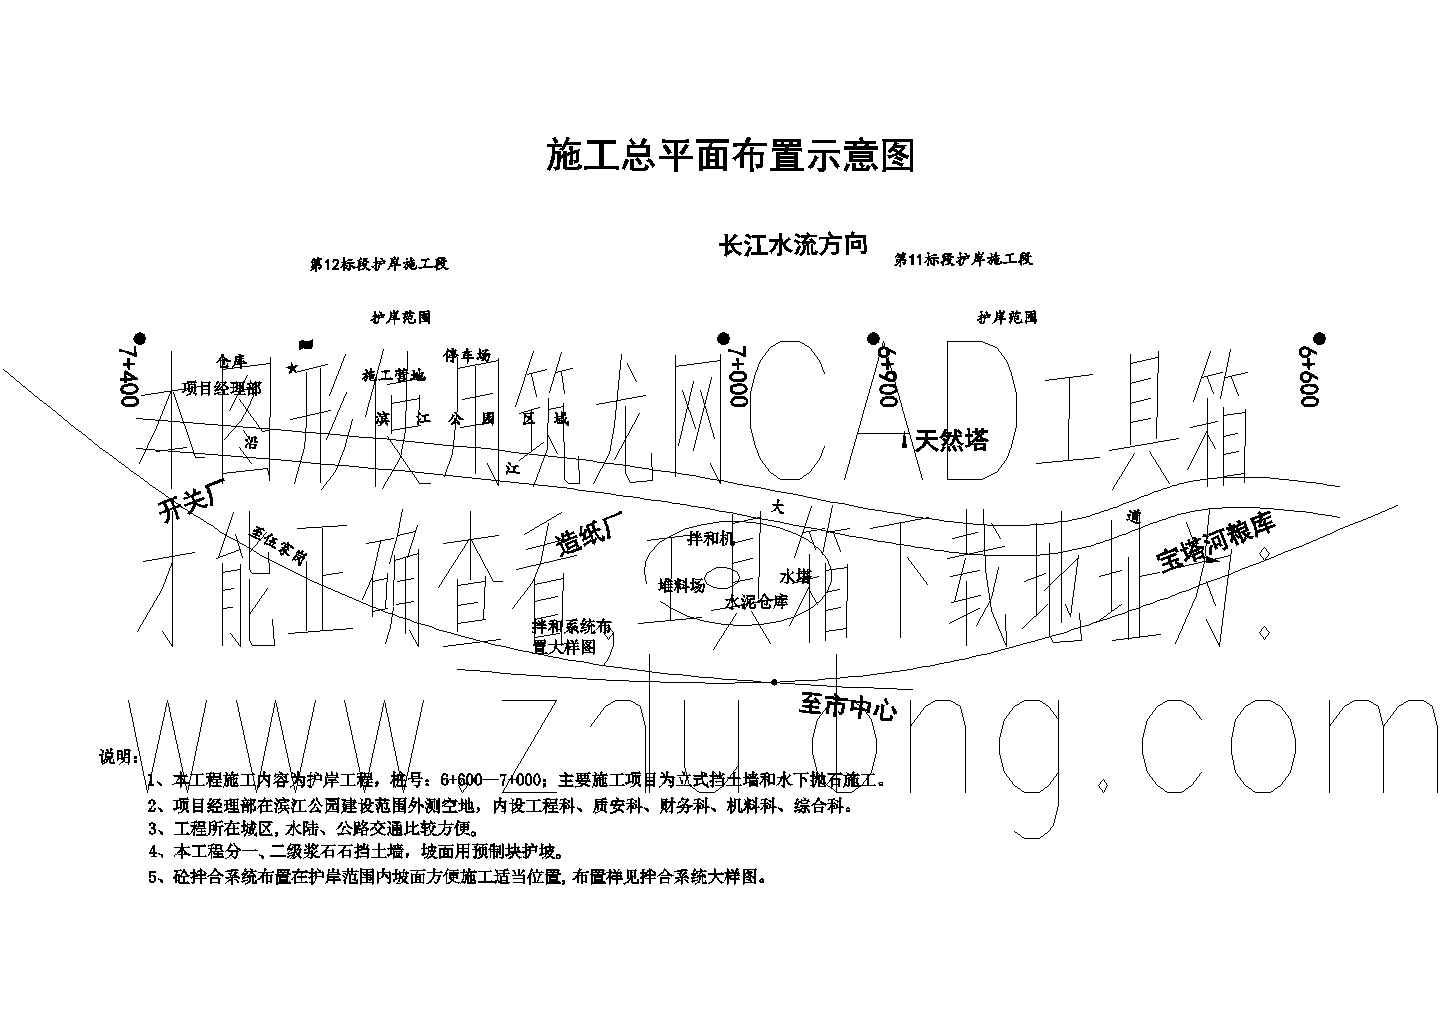 宜昌城区防洪护岸工程11标施工总平面布置图.